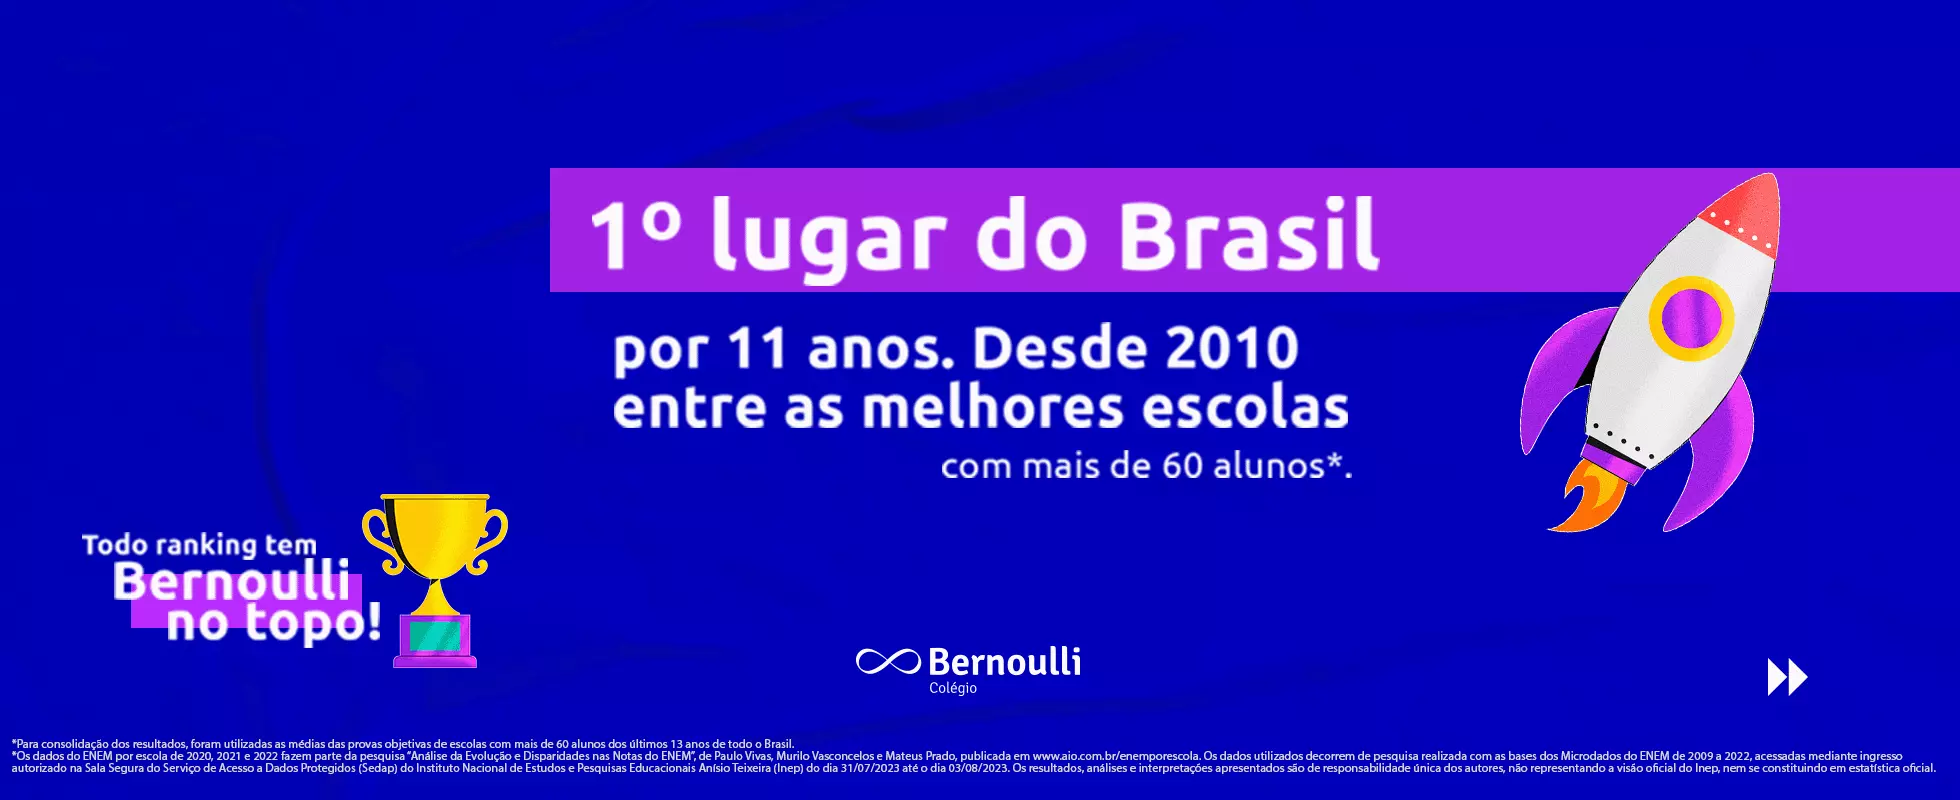 Colégio Bernoulli é o 1º lugar do Brasil por 11 anos no Enem